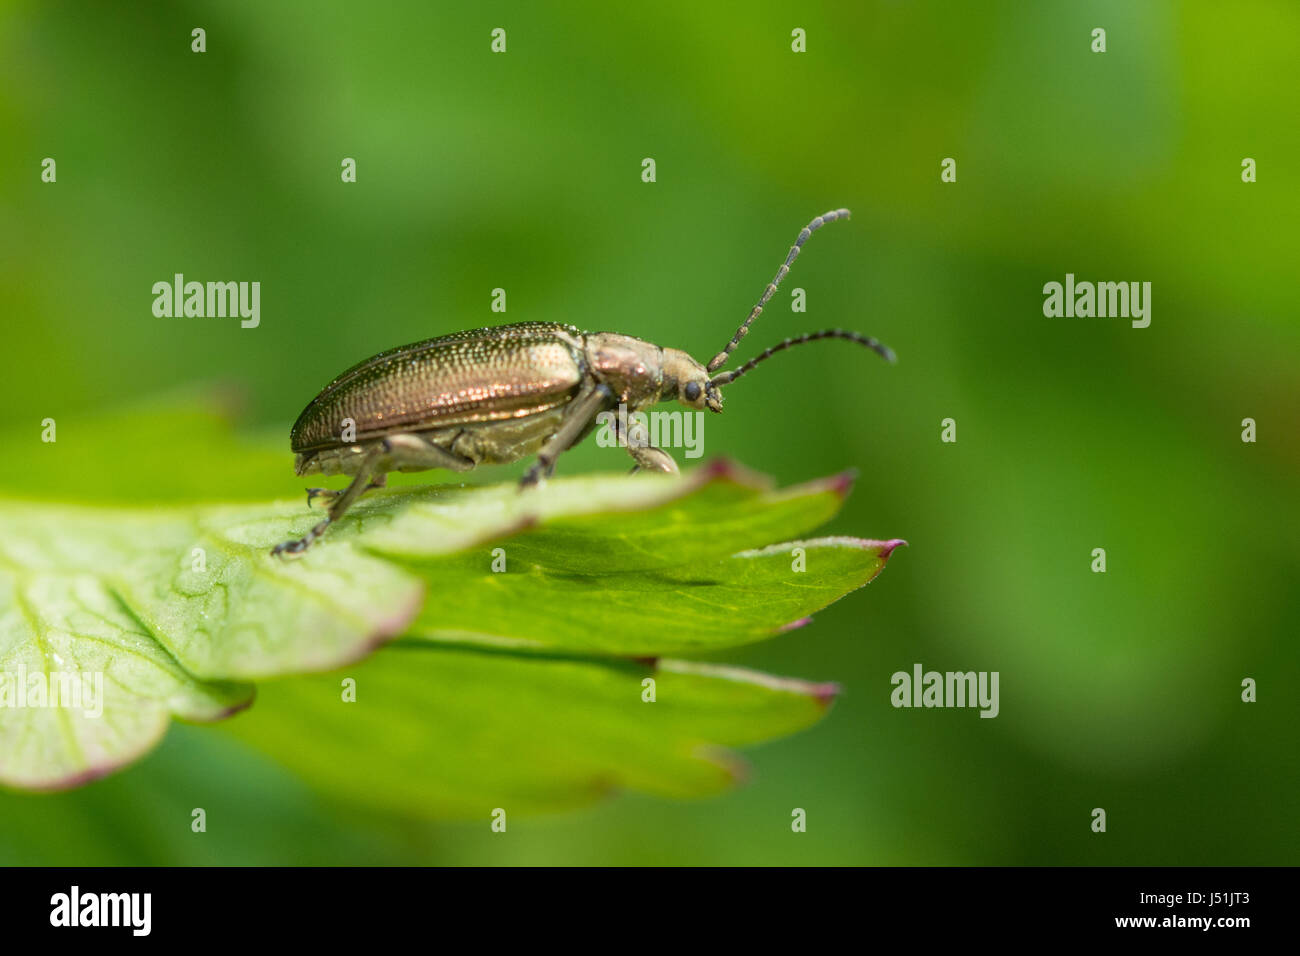 Gros plan du coléoptère (Order Coleoptera) sur une feuille verte, Royaume-Uni Banque D'Images